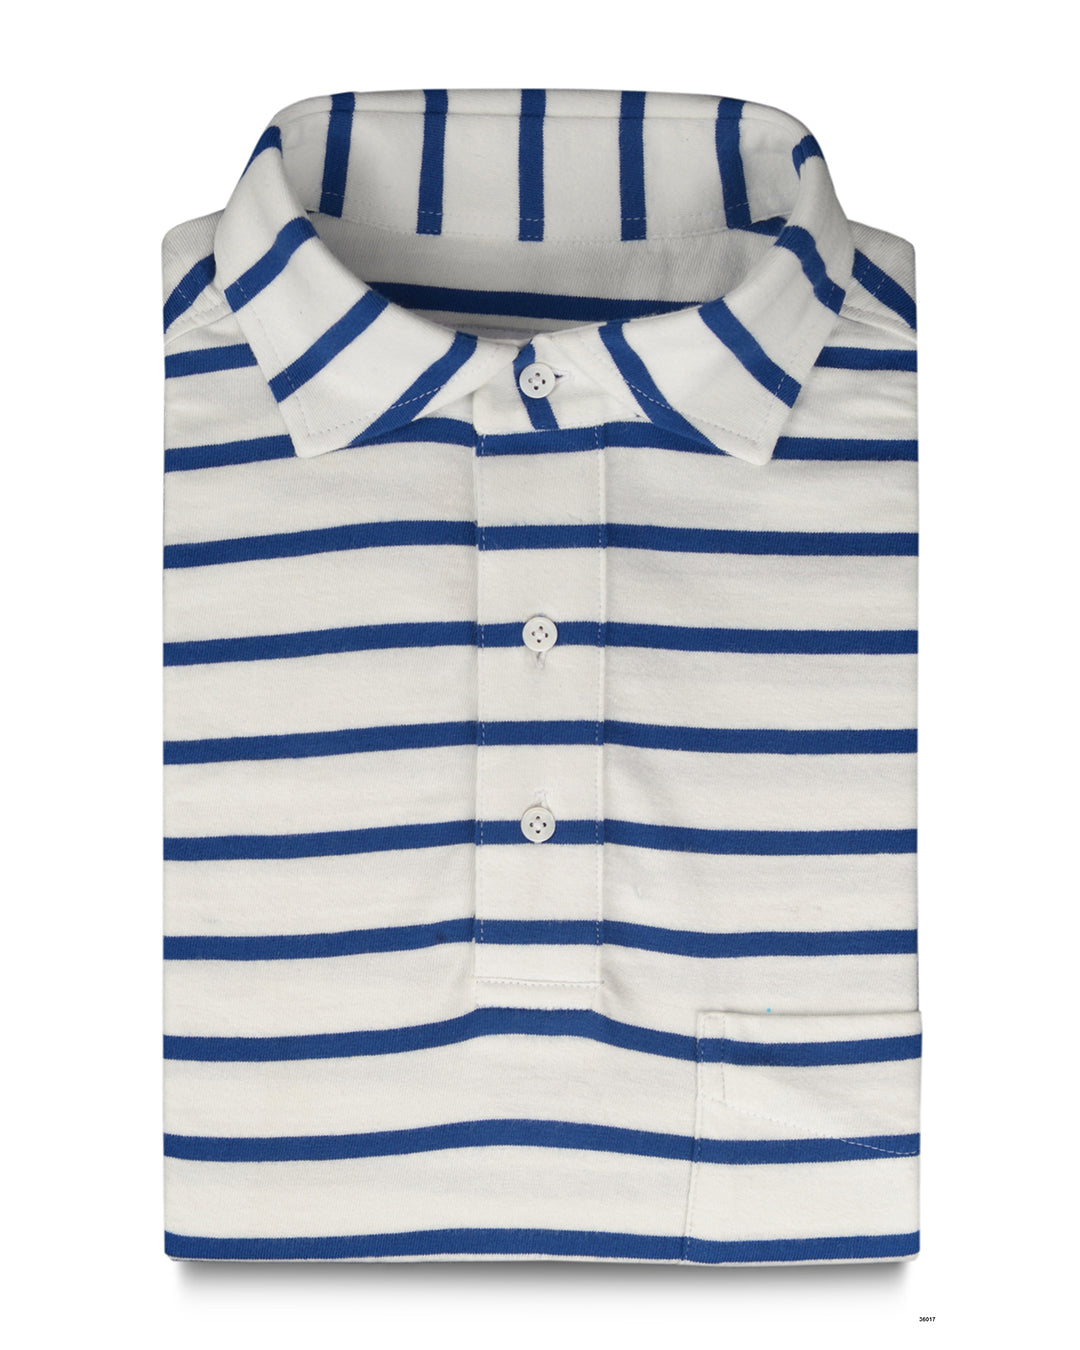 Navy & White Striped Polo T-shirt